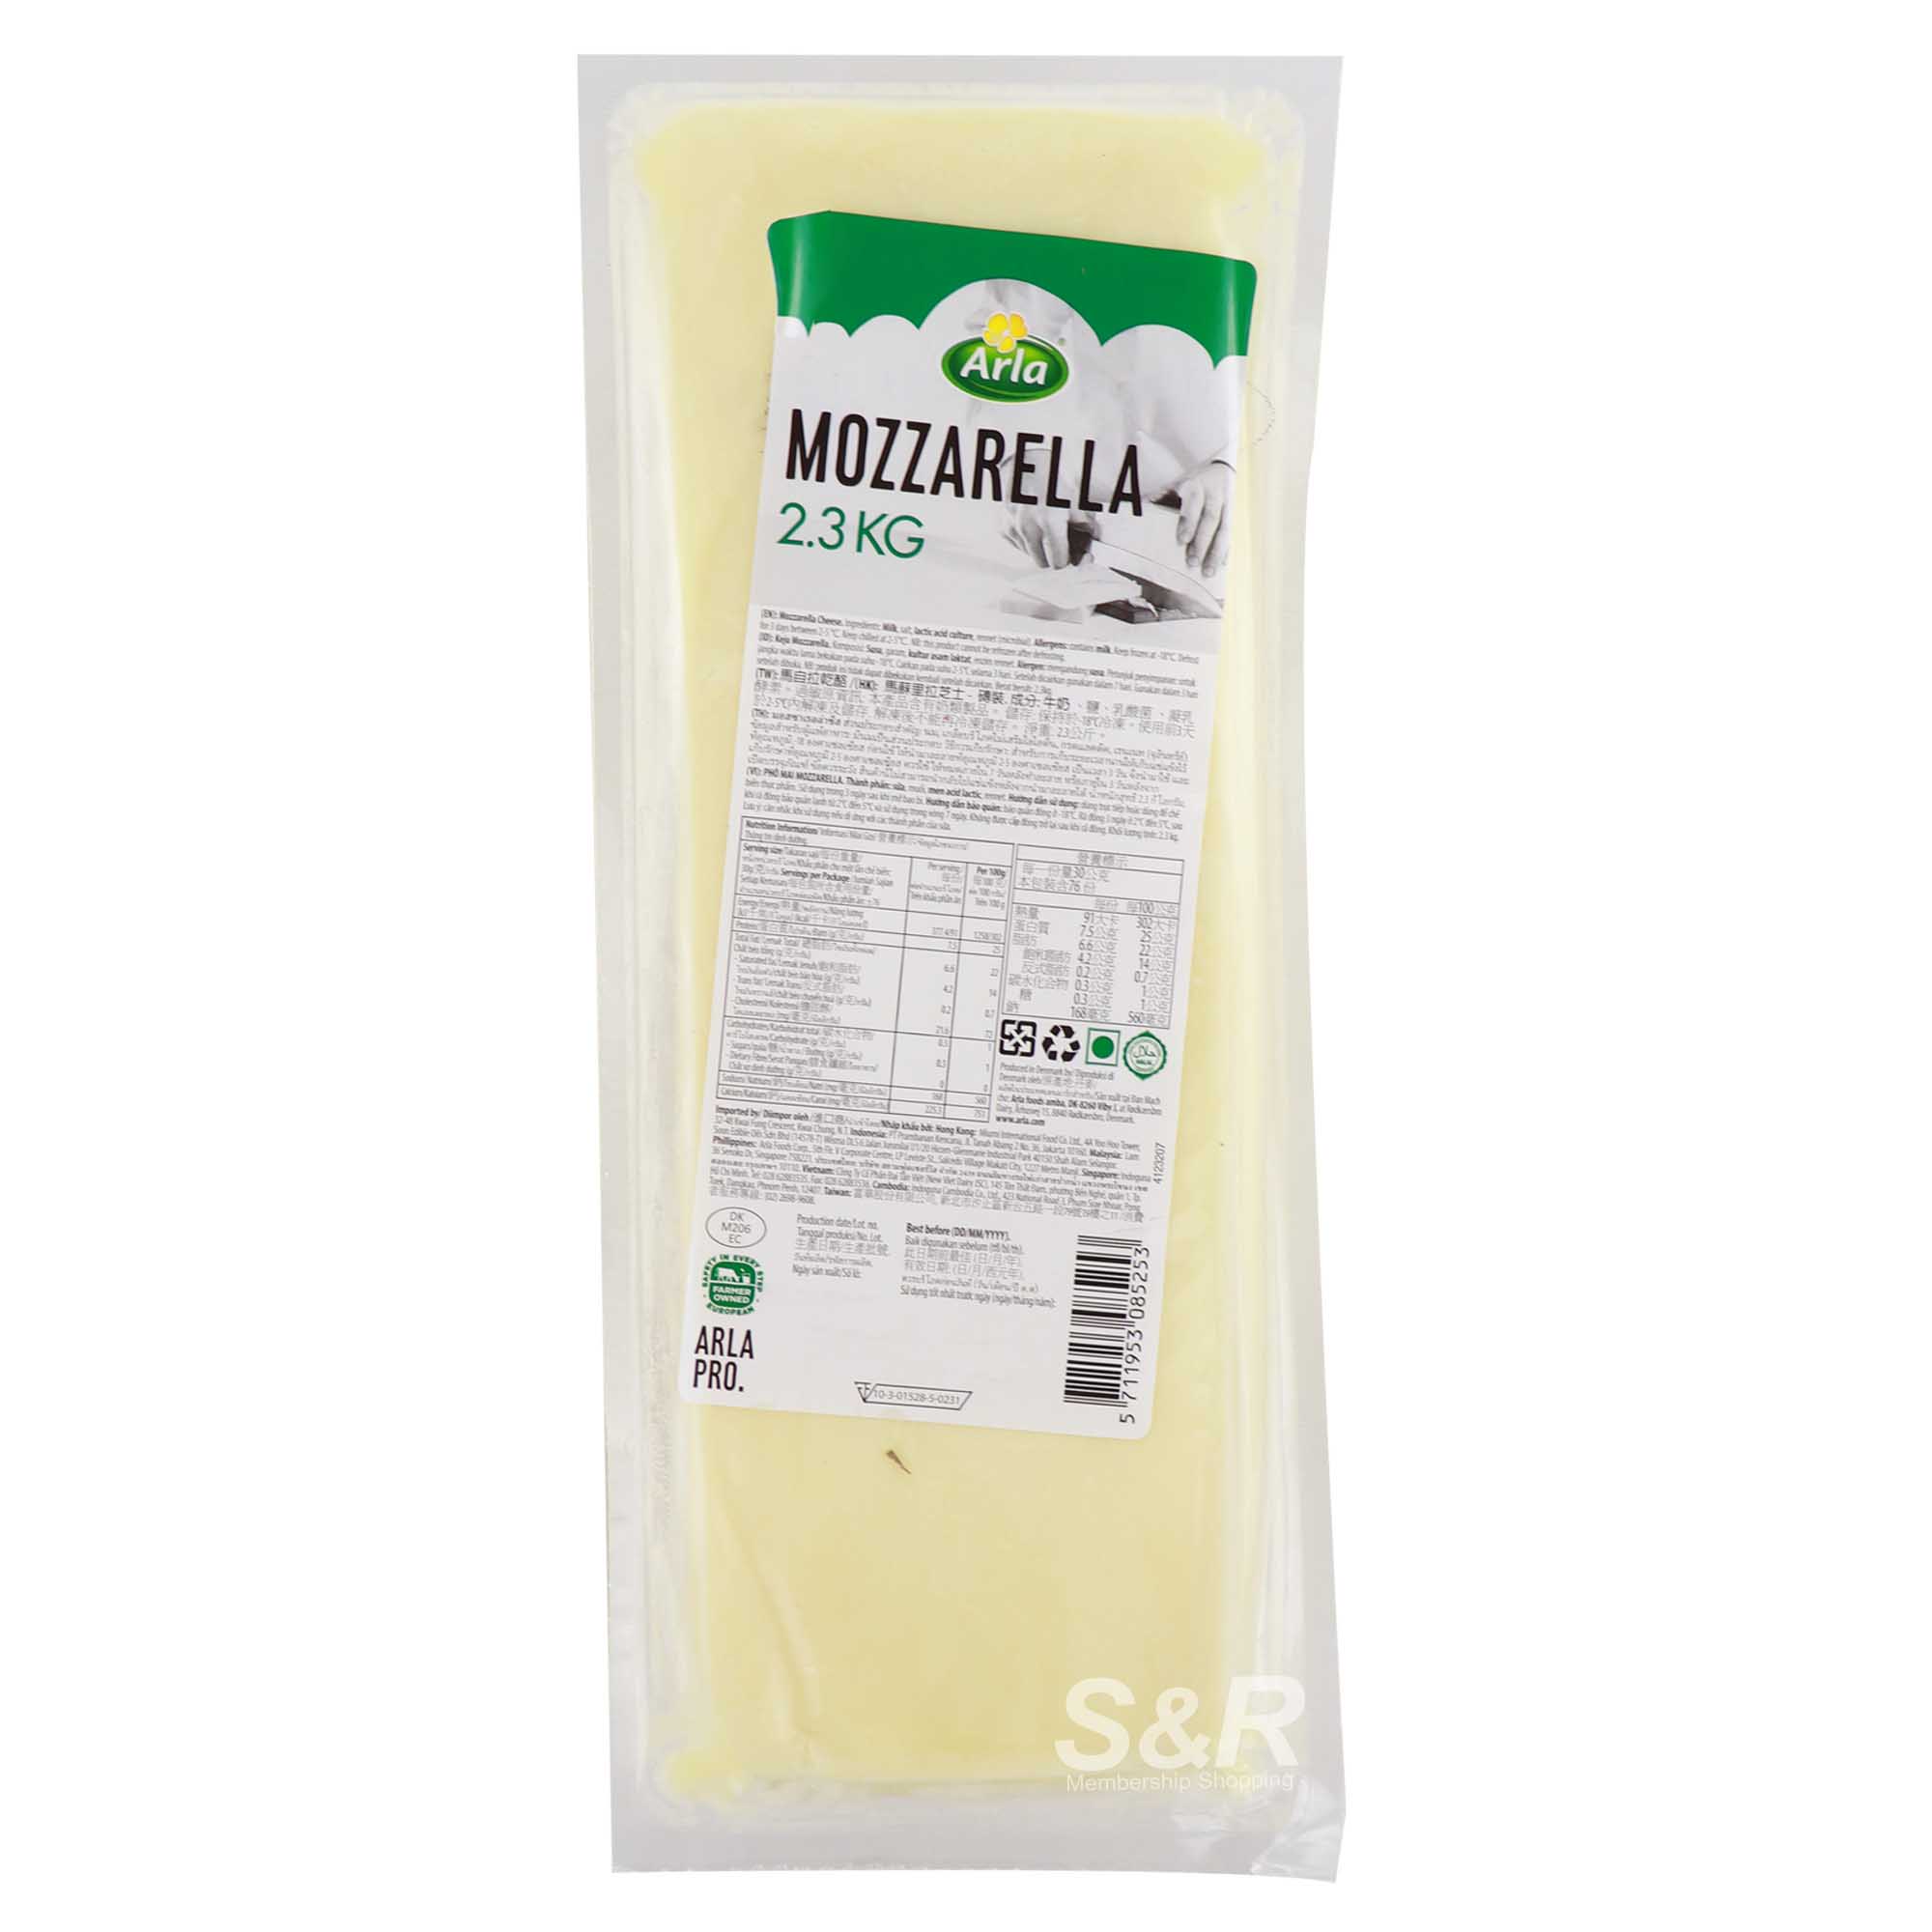 Arla Mozzarella Cheese 2.3kg